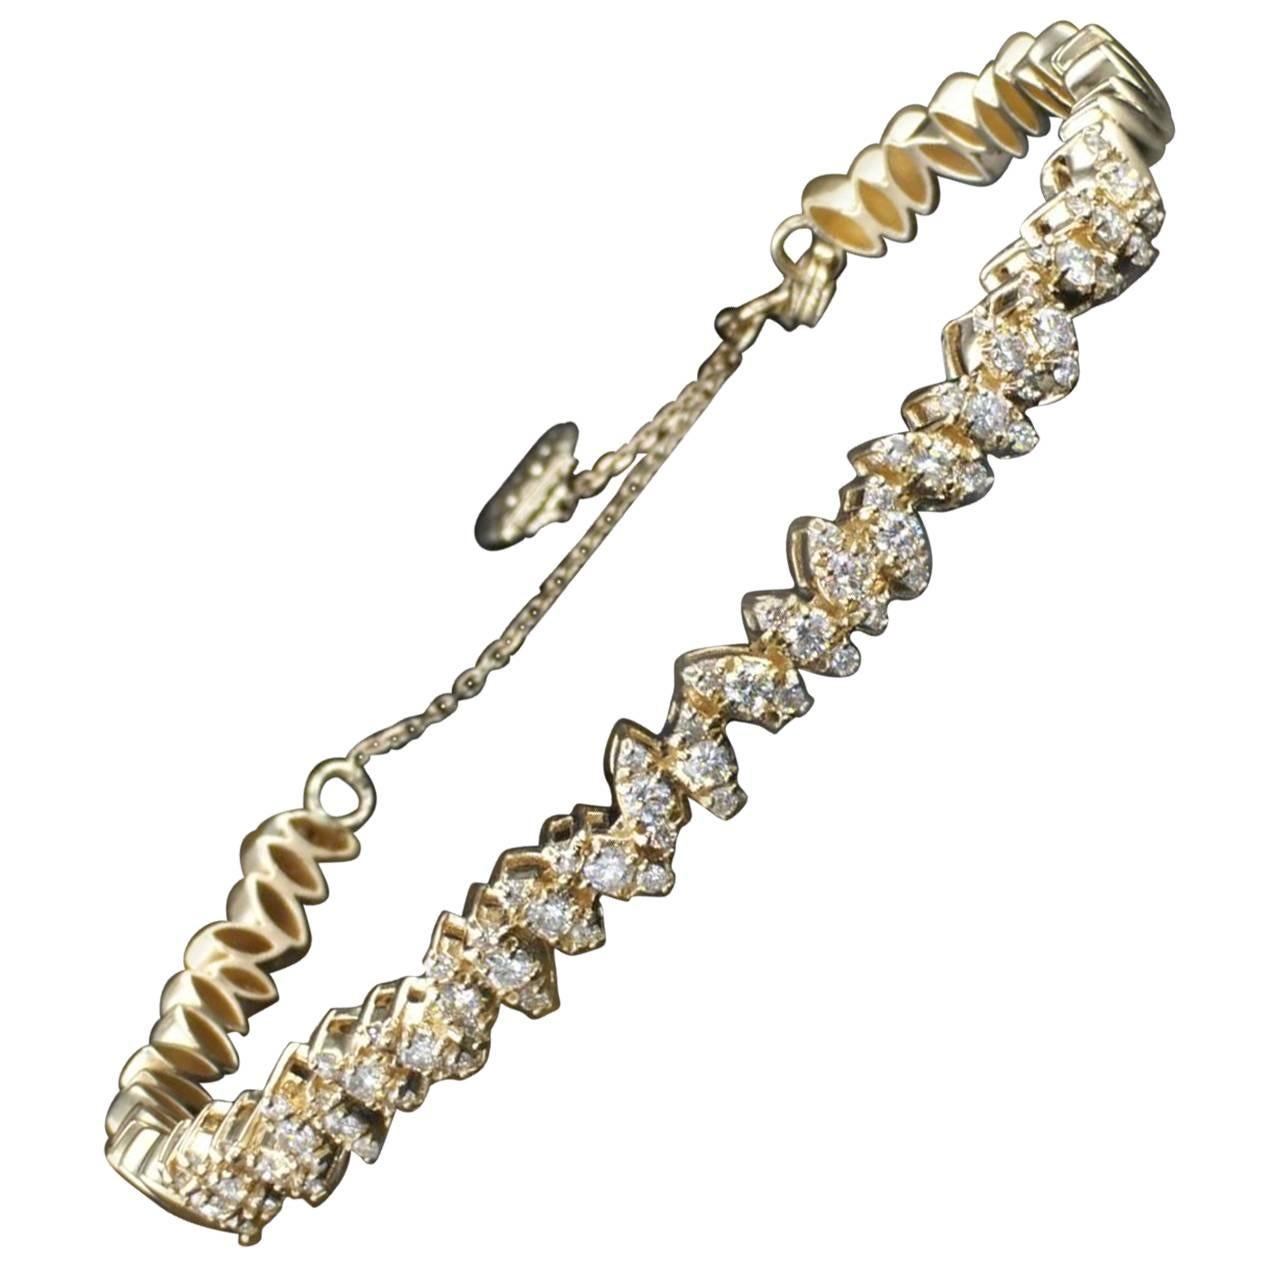 0.83 Carat Leaf Motif Fashion Diamond Bangle Bracelet 14K Yellow Gold